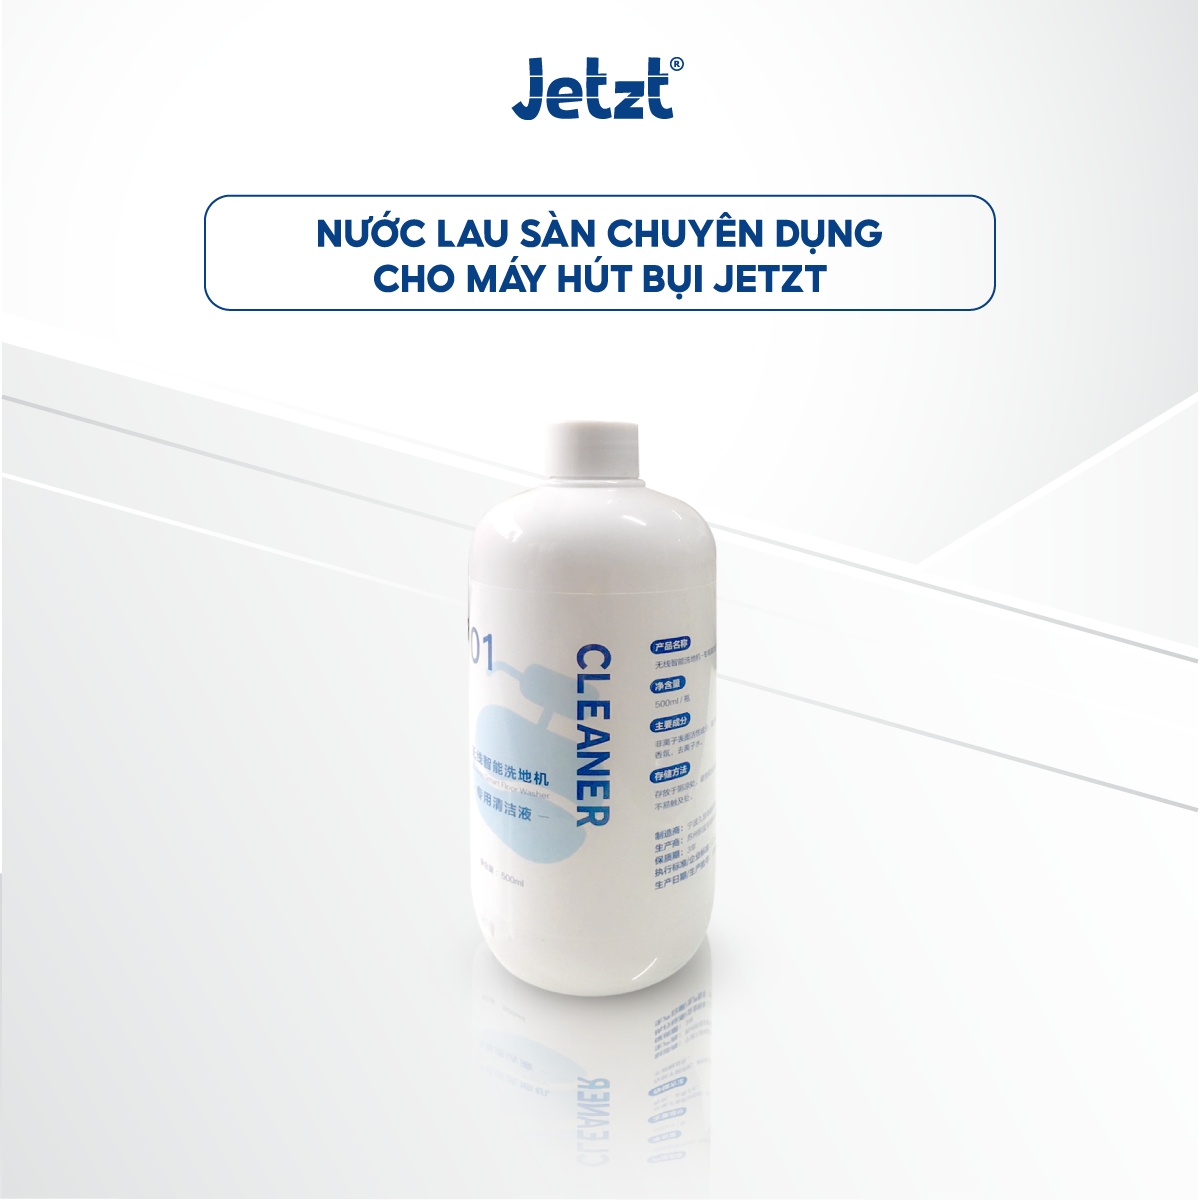 Nước lau sàn JETZT Cleaner dành cho máy lau sàn 500ml - Phụ kiện chính hãng